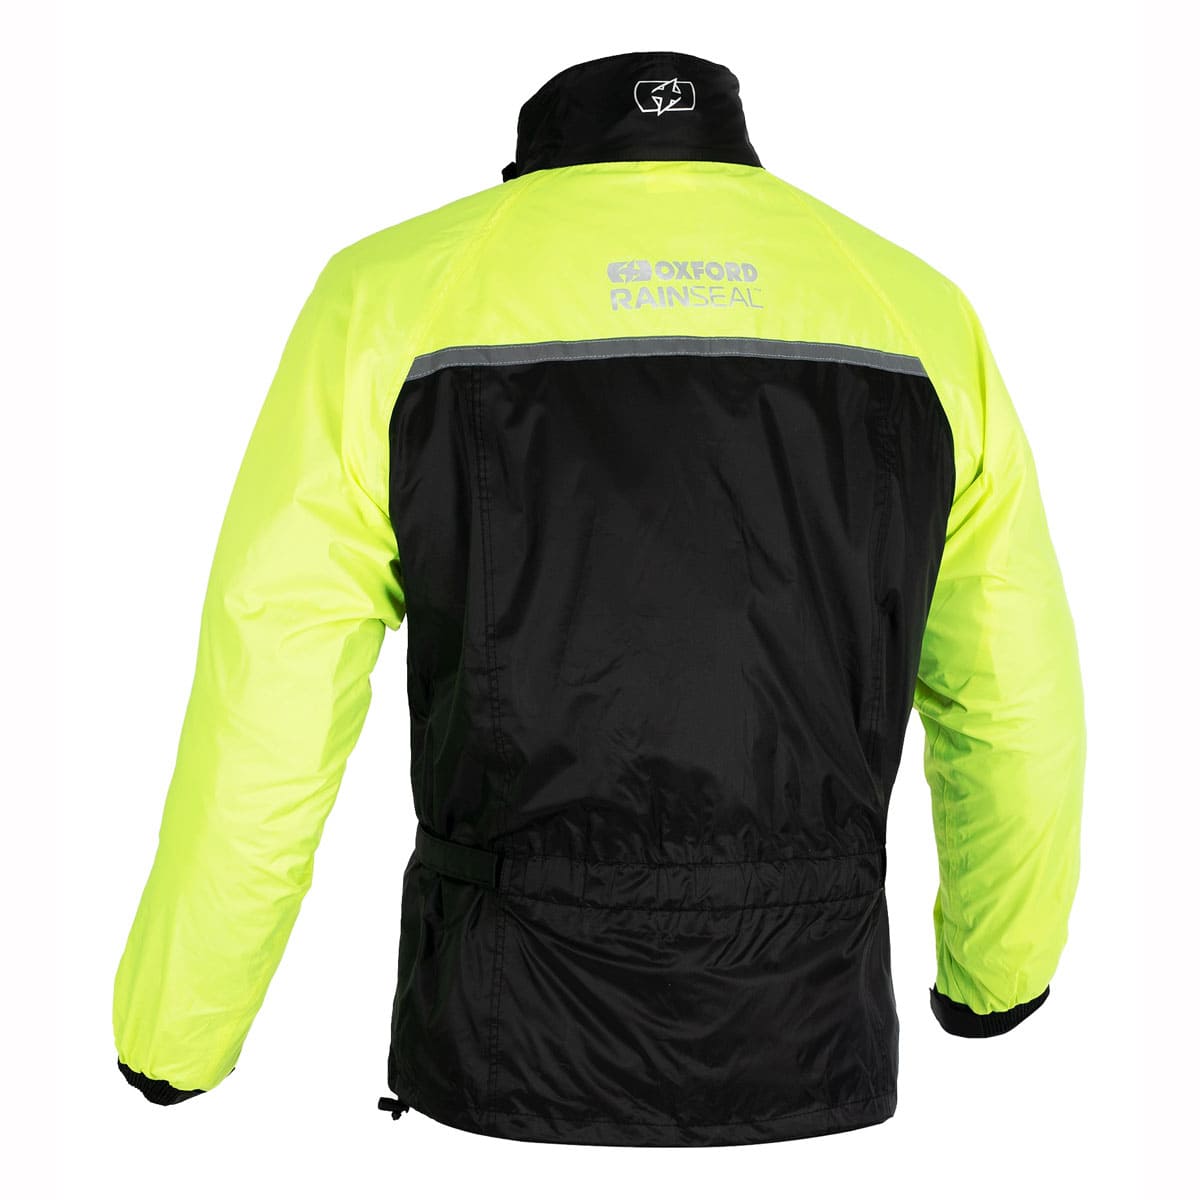 Oxford Rainseal Over Jacket WP - Black/Fluo back